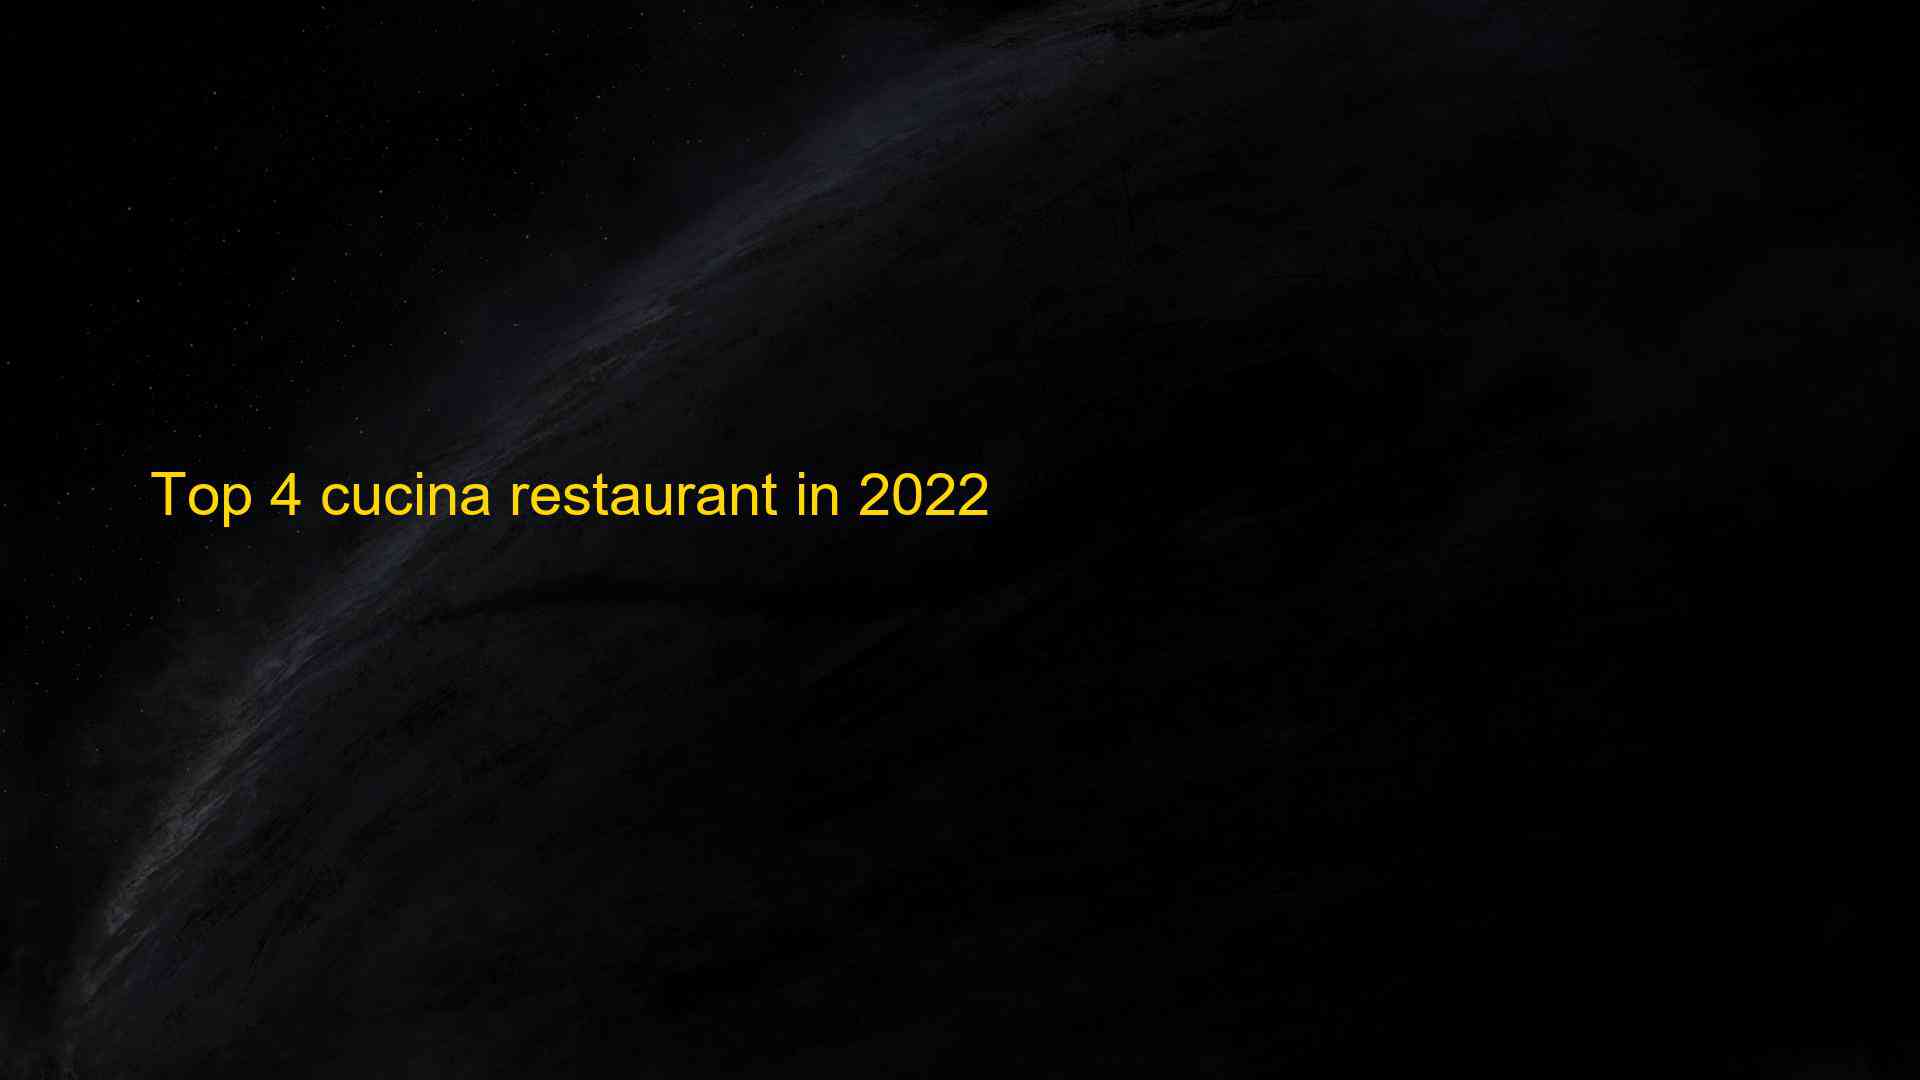 Top 4 cucina restaurant in 2022 1662857900